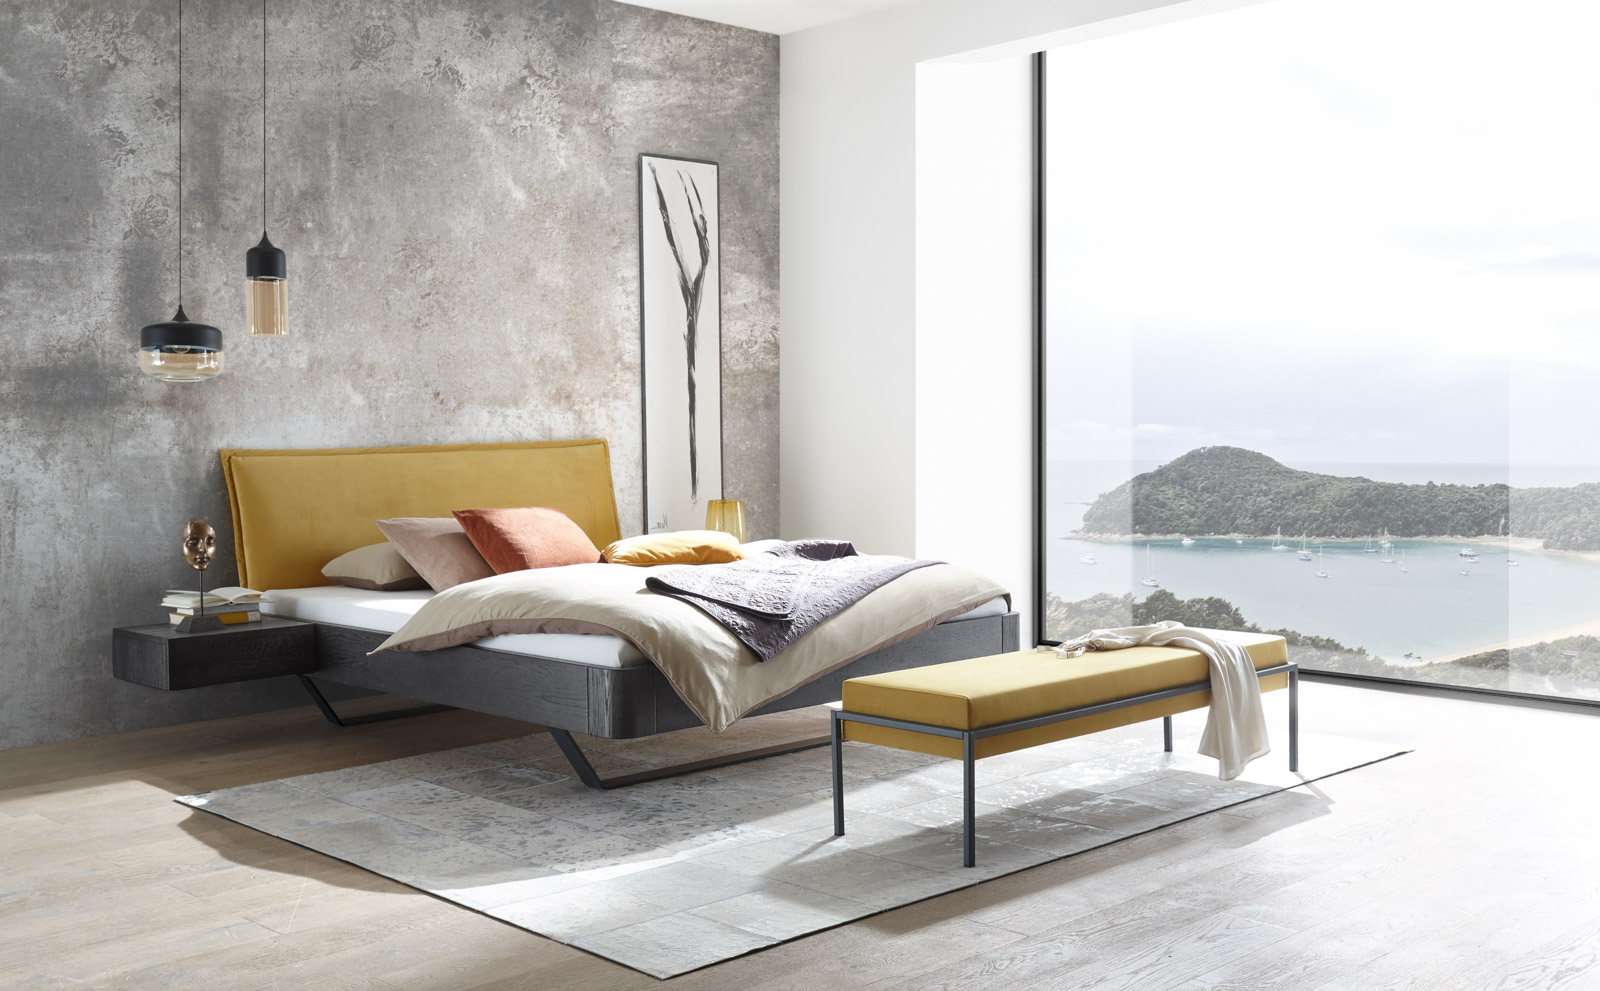 Industrial Style-Bett der Oak Line von Hasena mit senfgelbem Kopfteil und Polsterbank